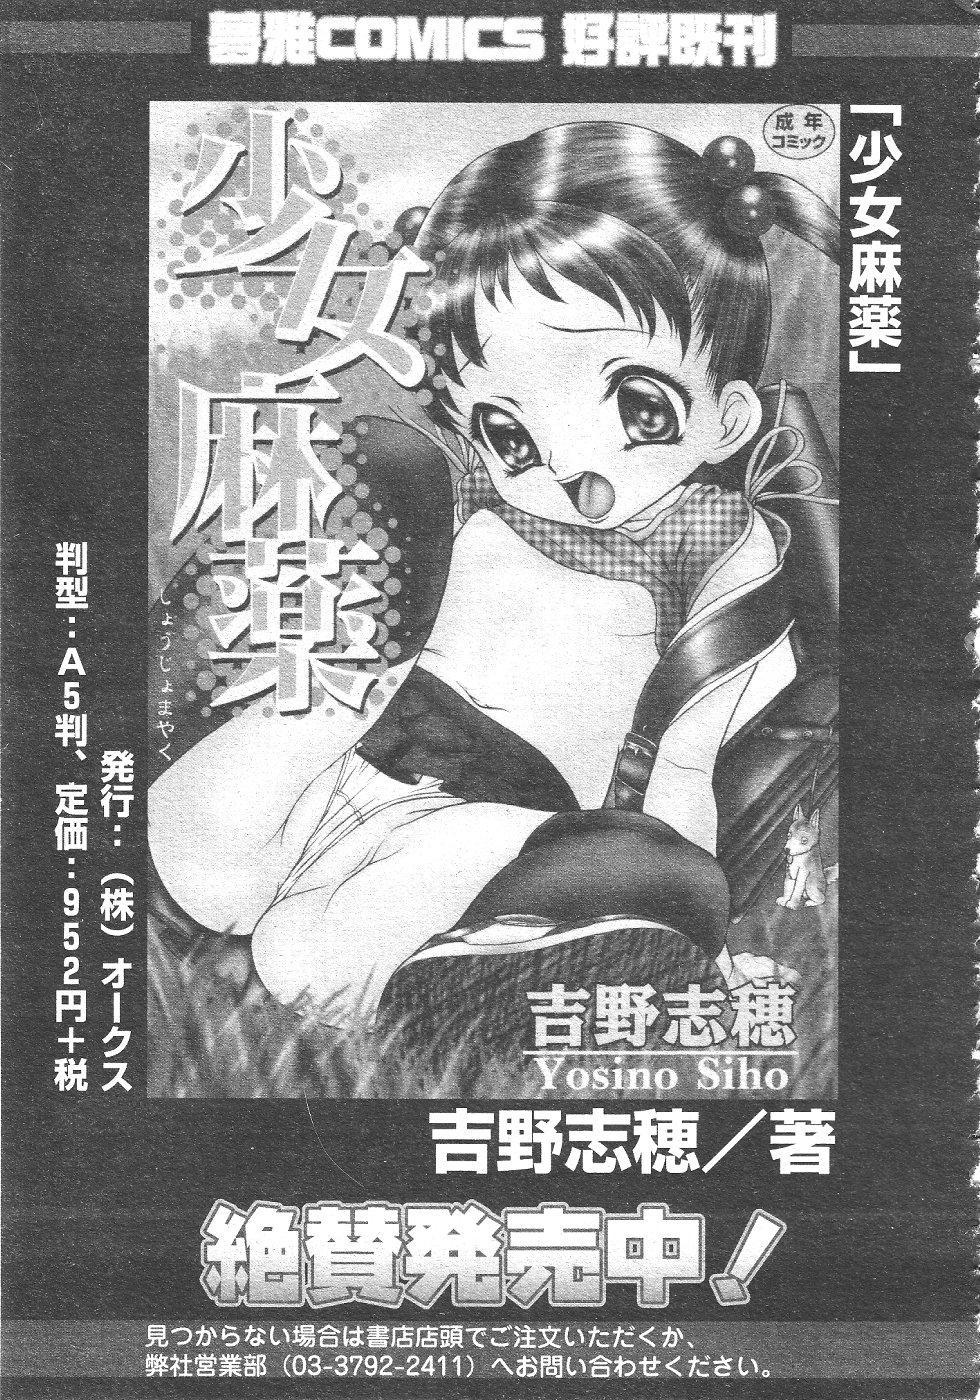 Gekkan Comic Muga 2004-06 Vol.10 366